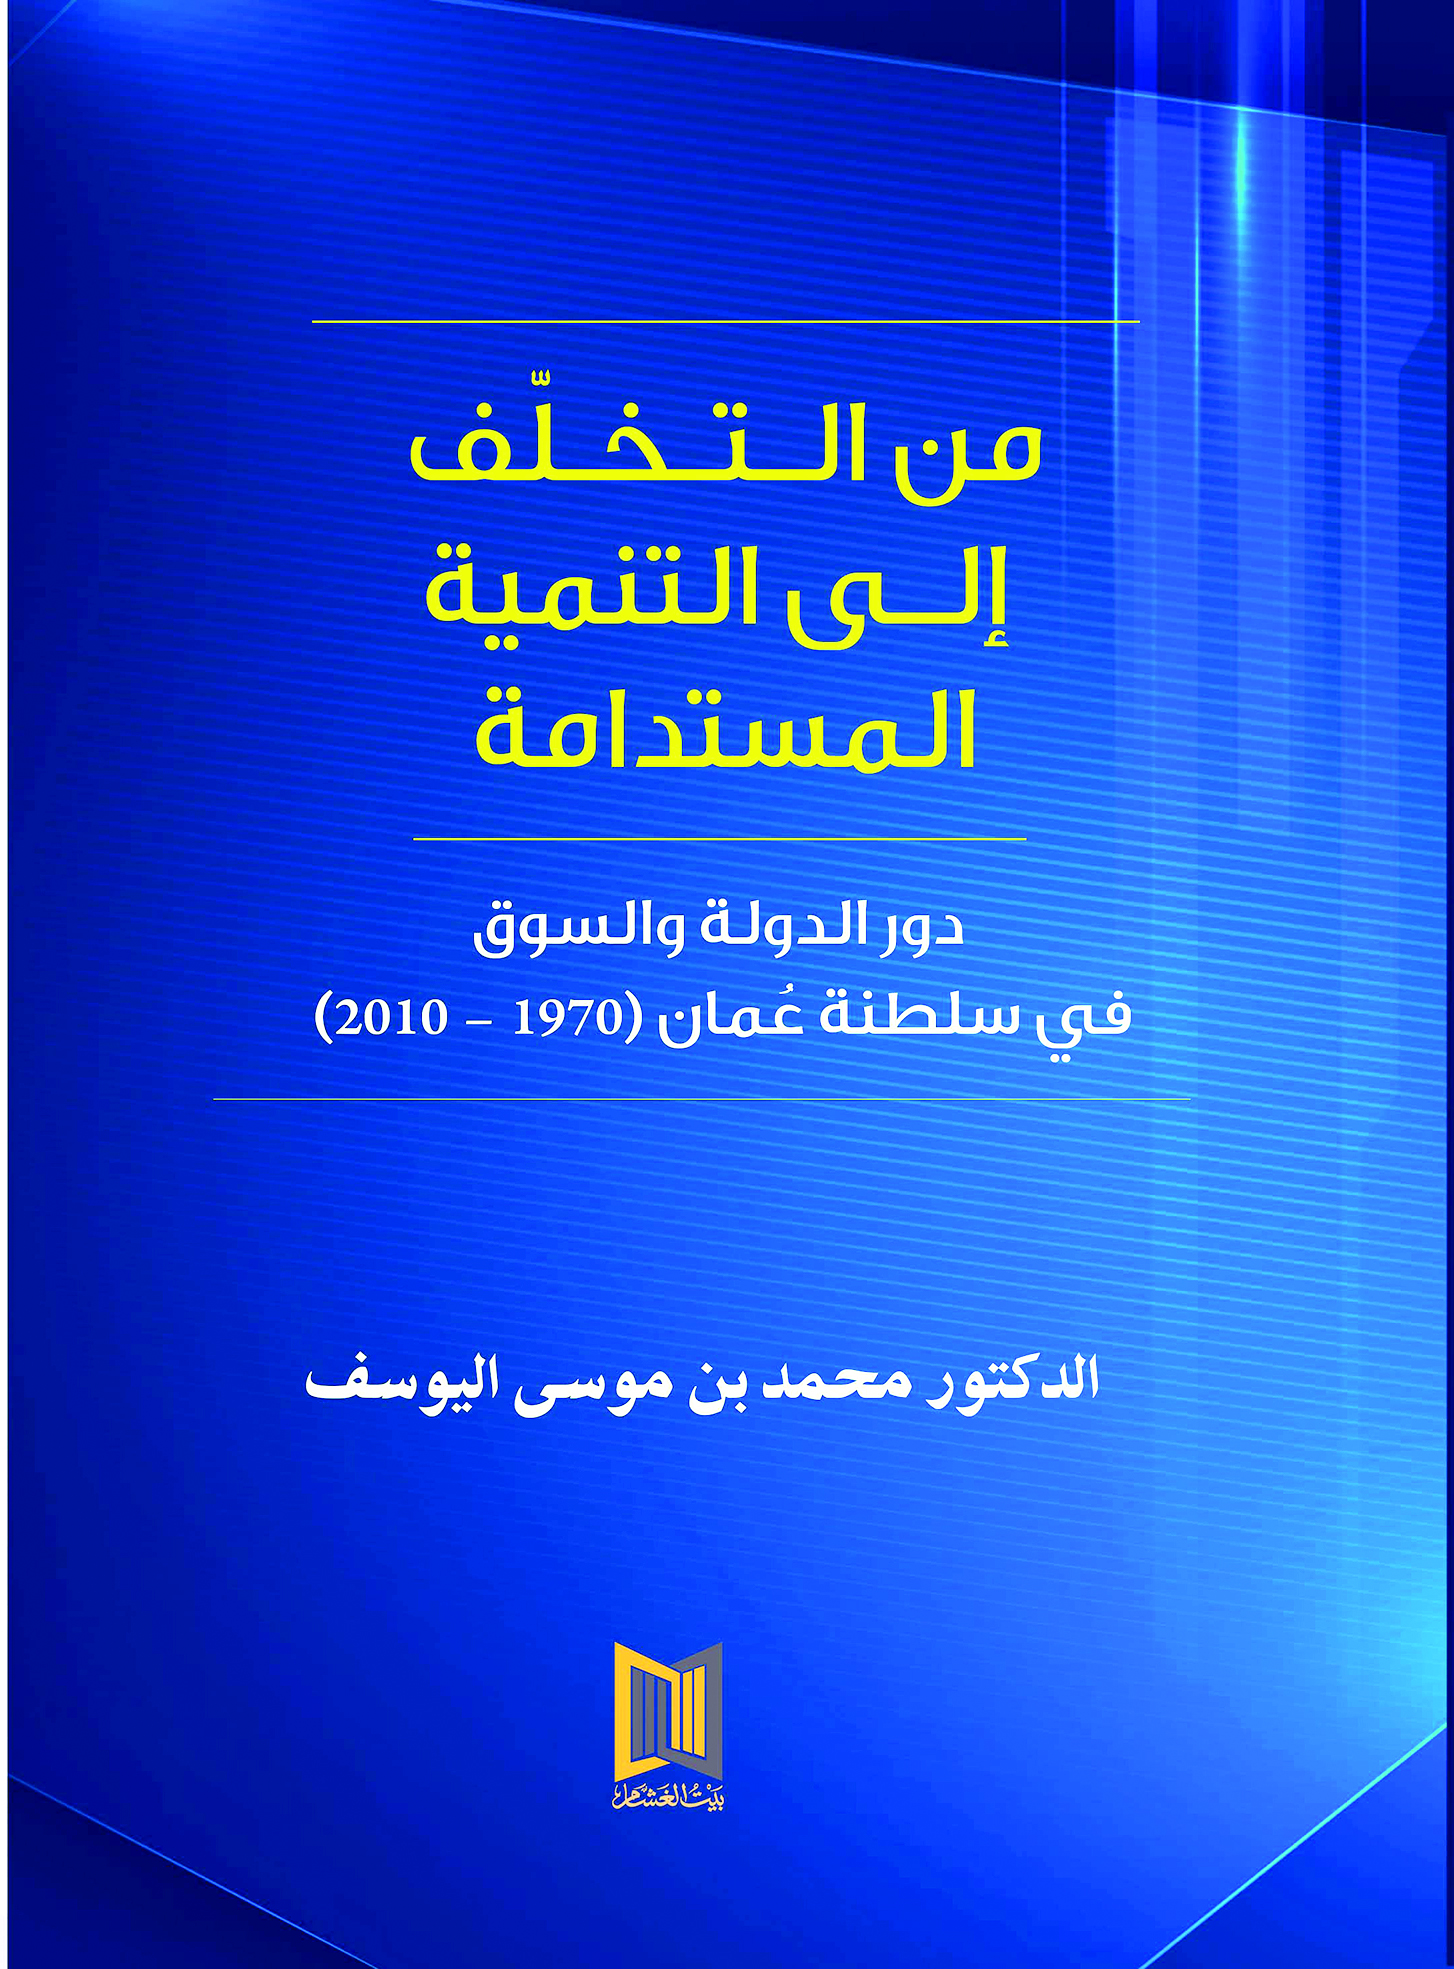 "من الـتـخـلّف إلـى التنمية المستدامة" .. كتاب جديد لمحمد بن موسى اليوسف